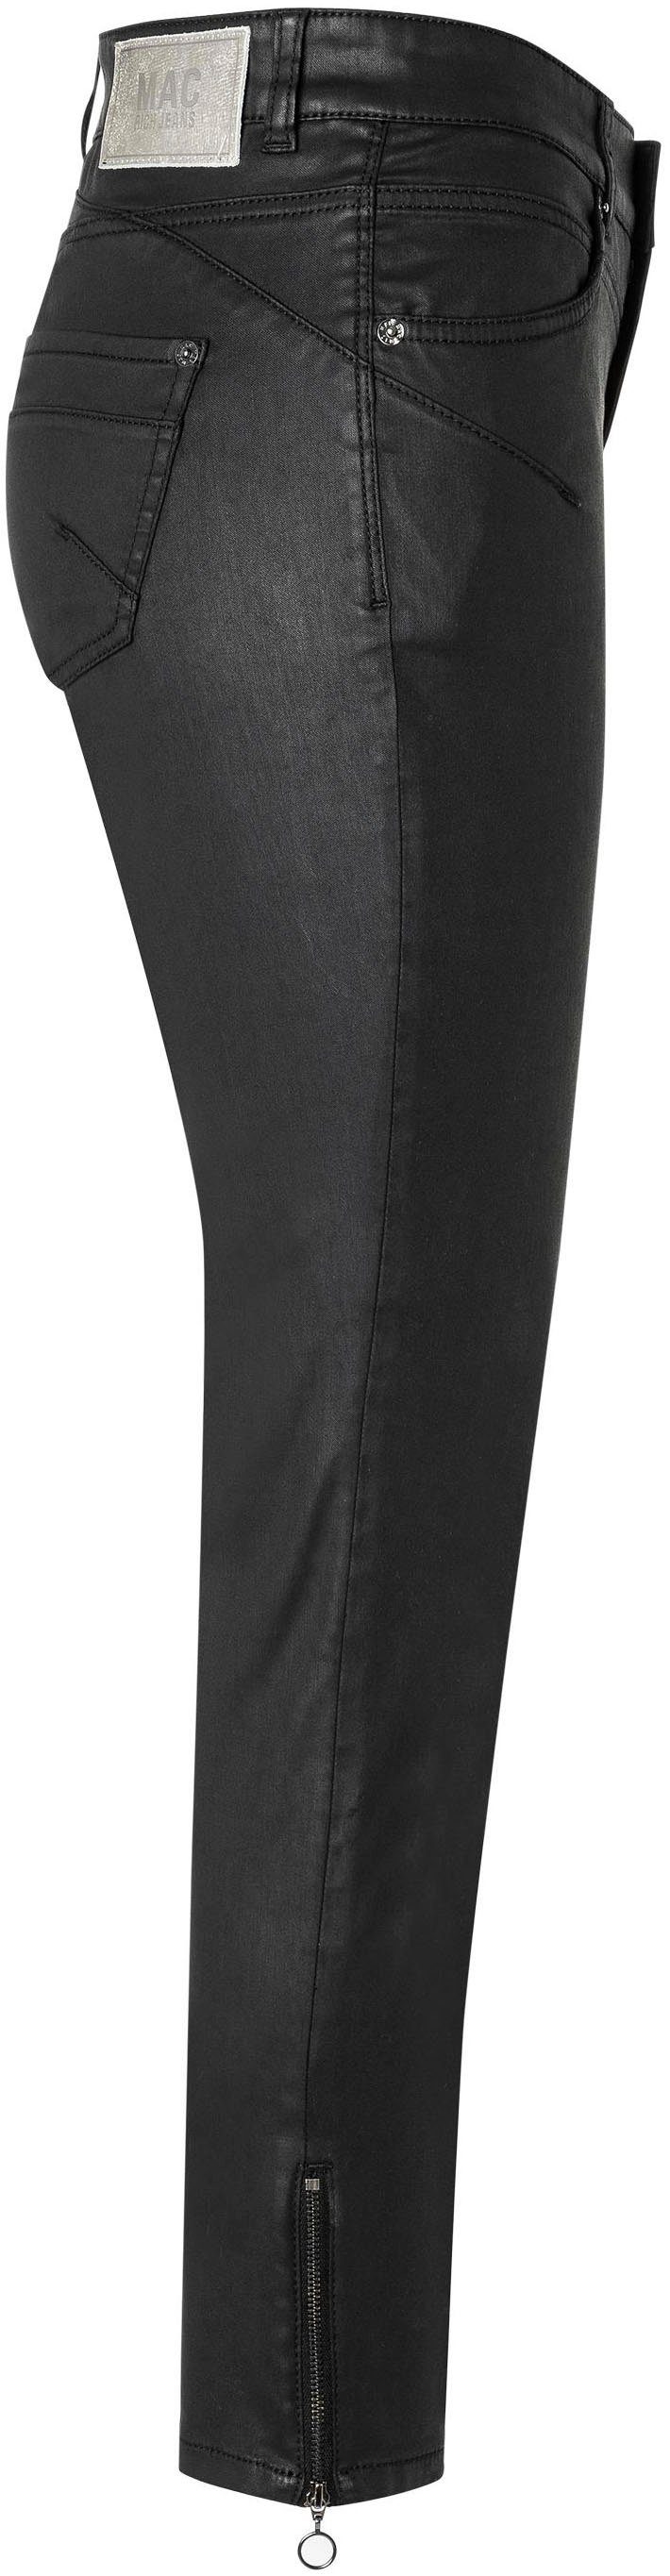 Reißverschluss-Detail Bein am Röhrenhose RICH mit SLIM coating chic black MAC